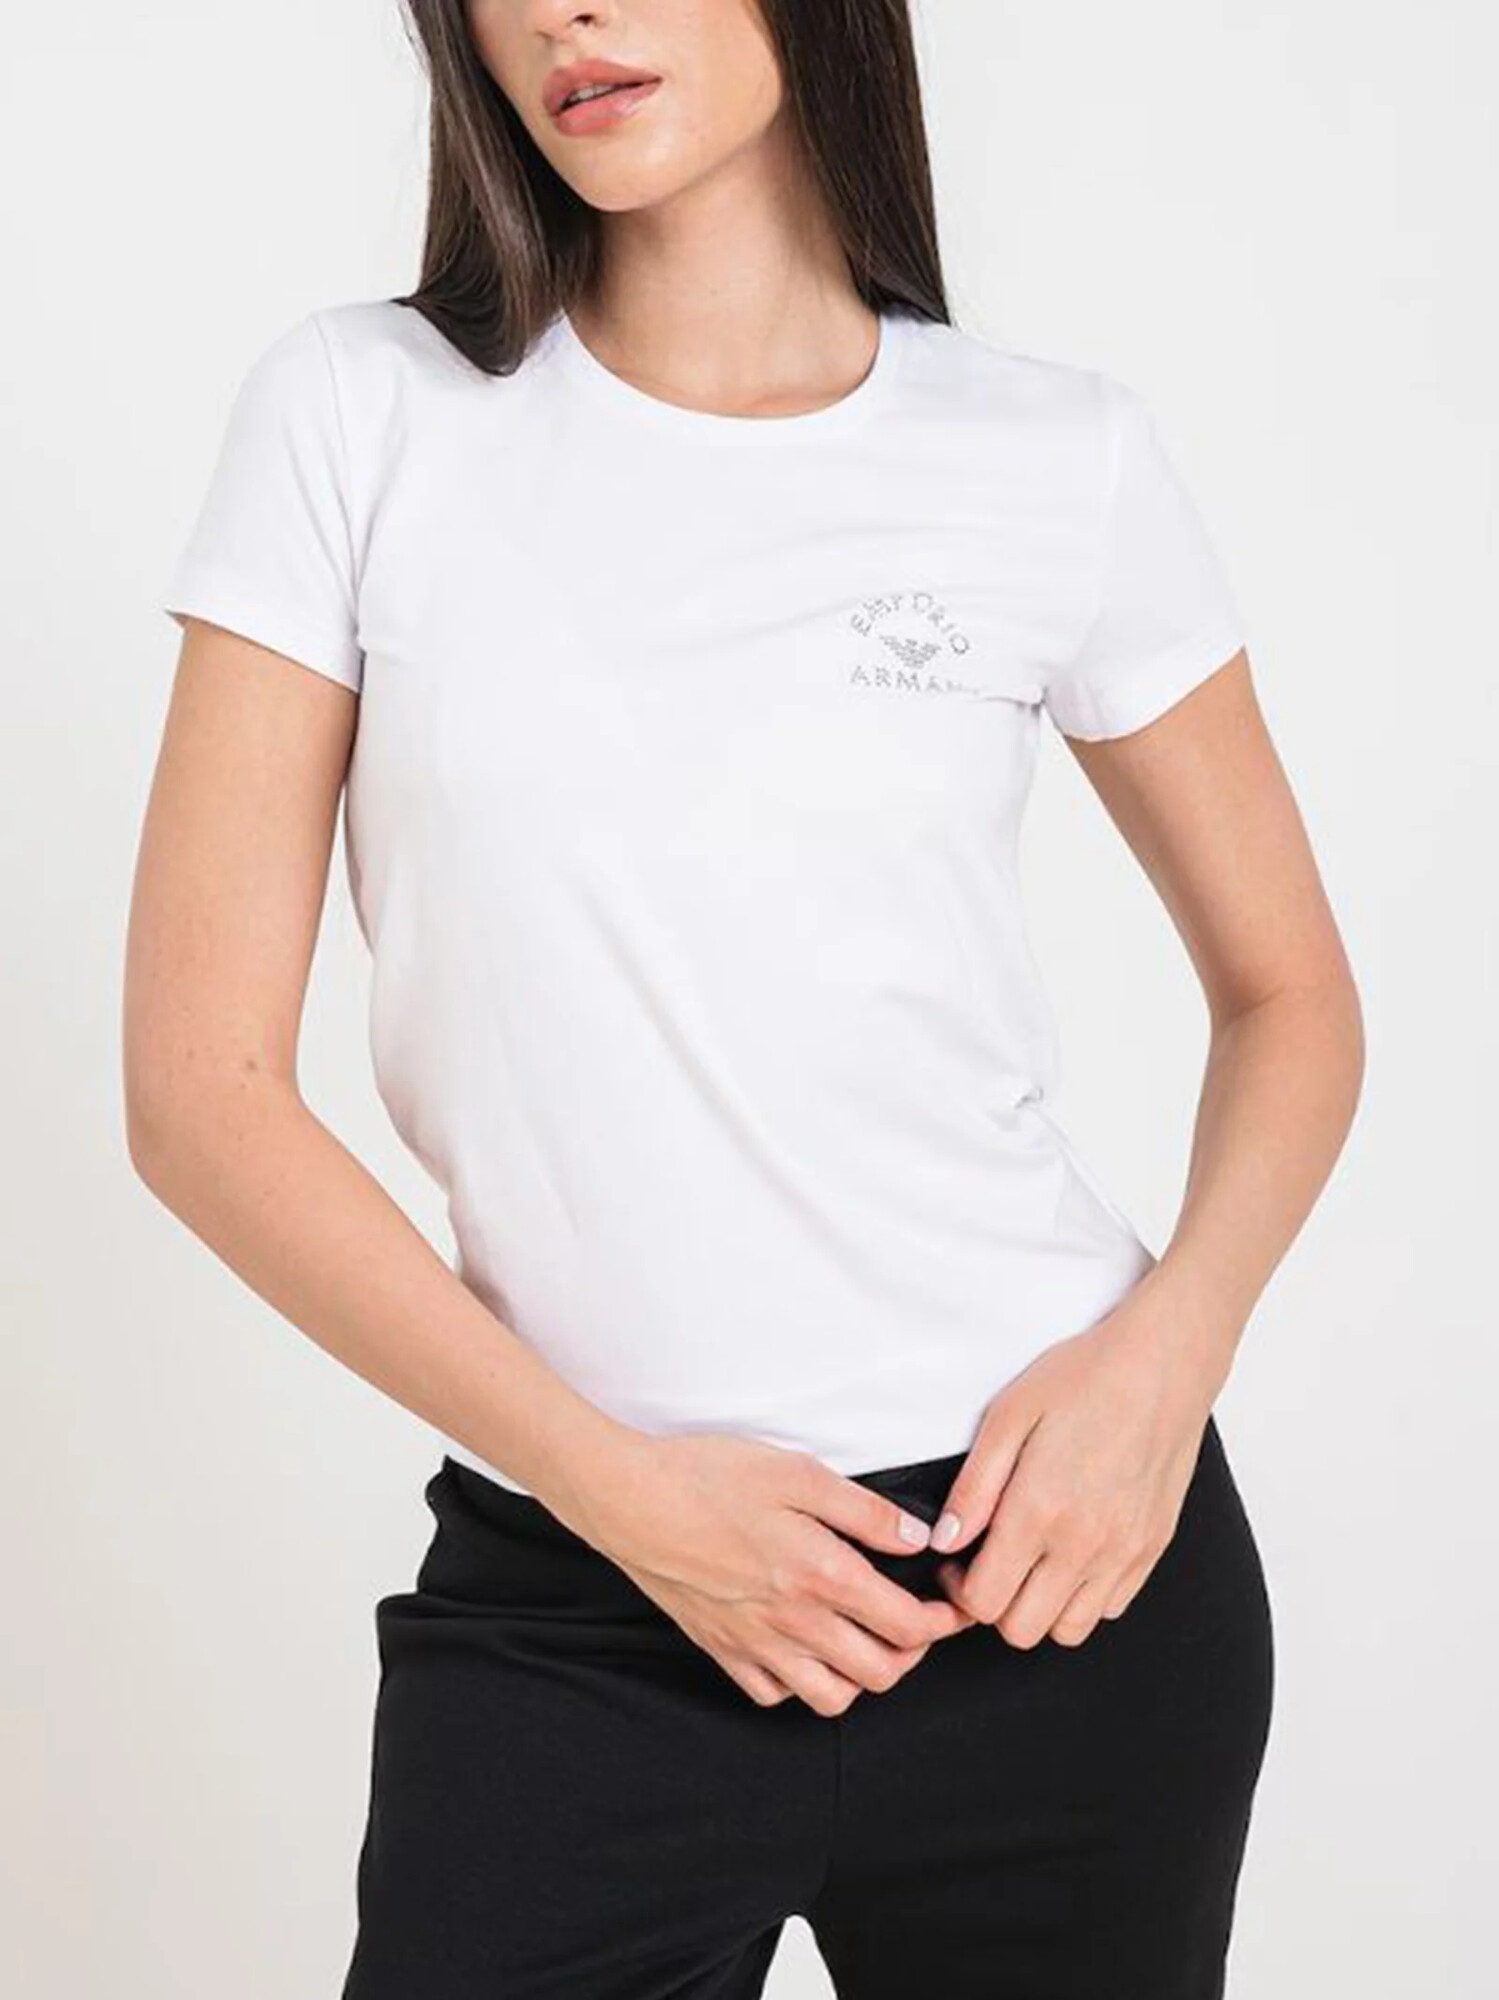 Dámské tričko 163139 4R223 00010 bílé - Emporio Armani L